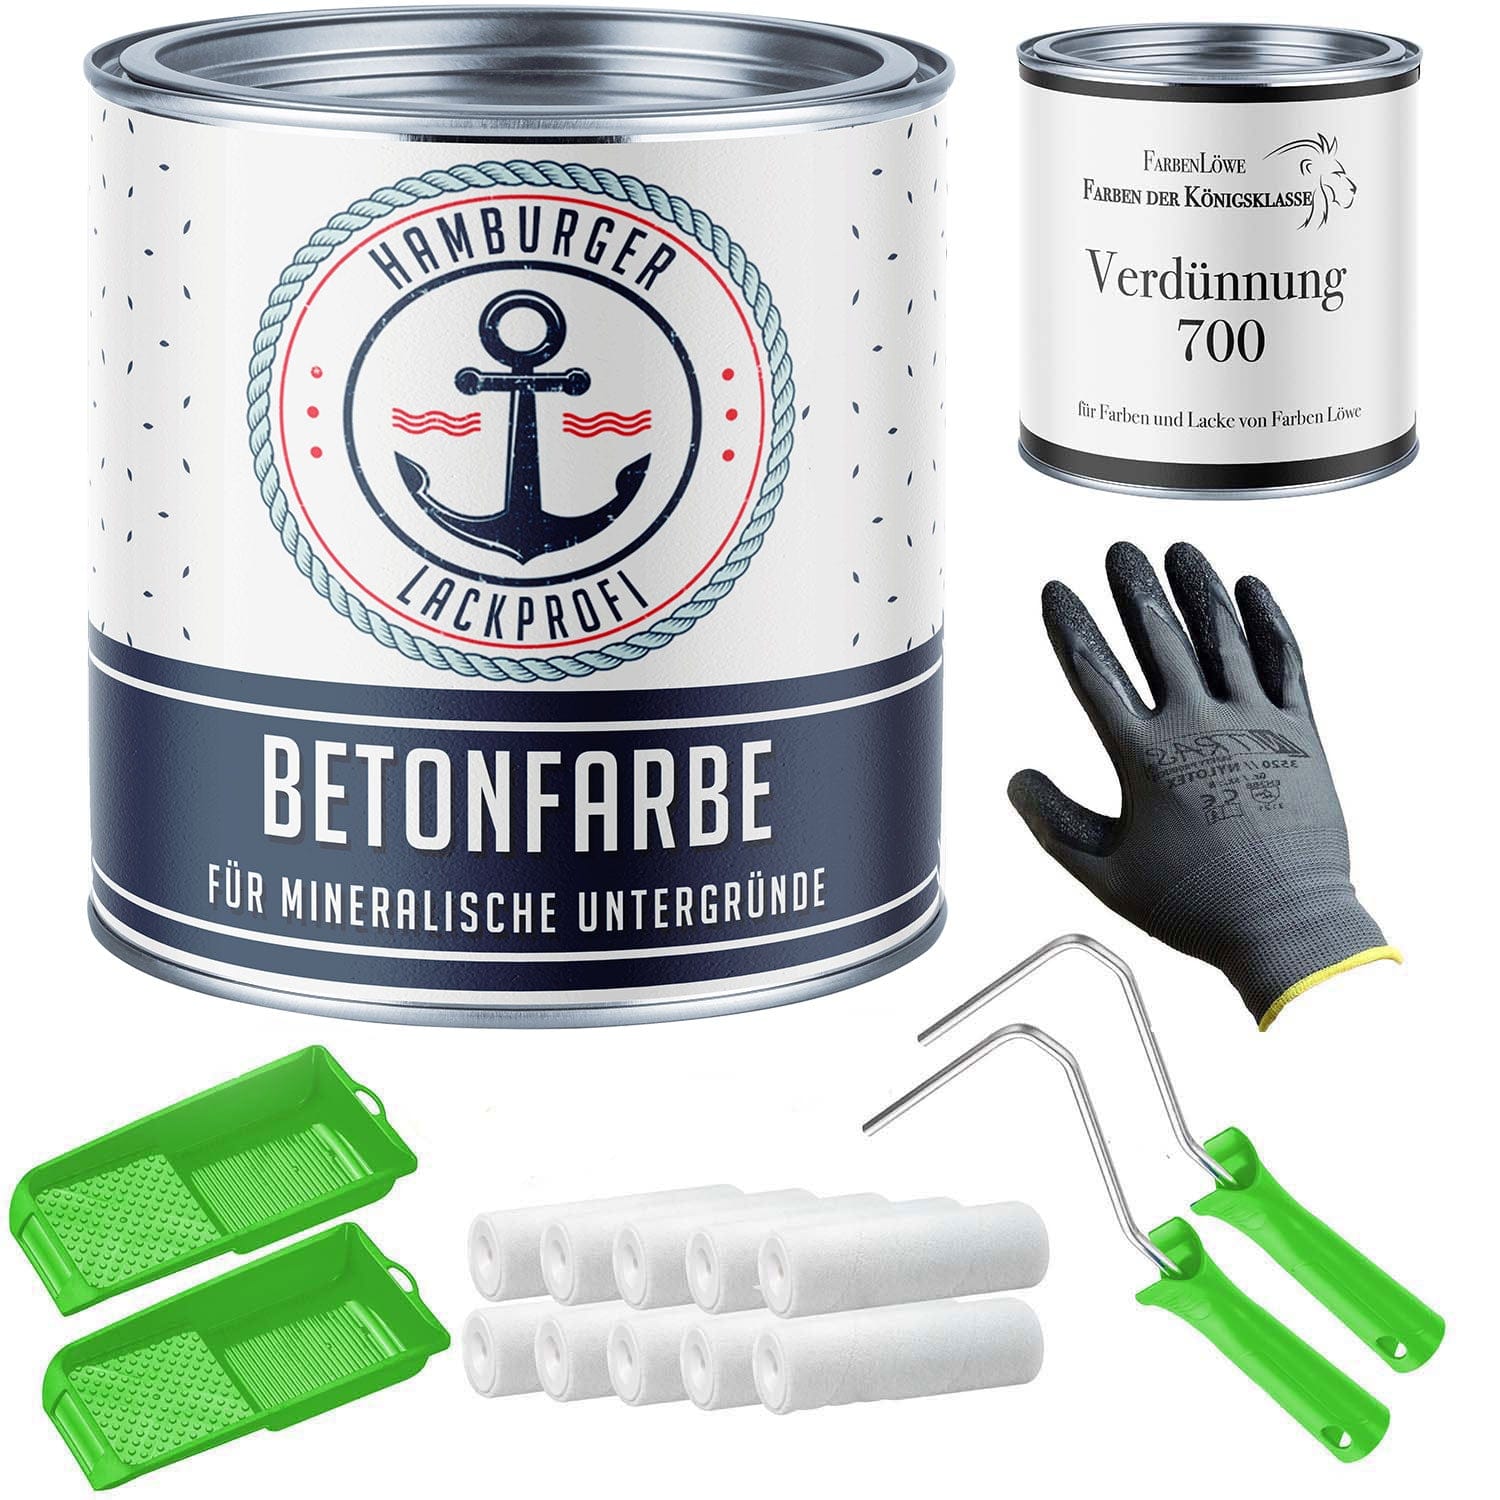 FARBENLÖWE Lacke & Beschichtungen Hamburger Lack-Profi Betonfarbe Weißgrün RAL 6019 mit Lackierset (X300) & Verdünnung (1 L) - 30% Sparangebot